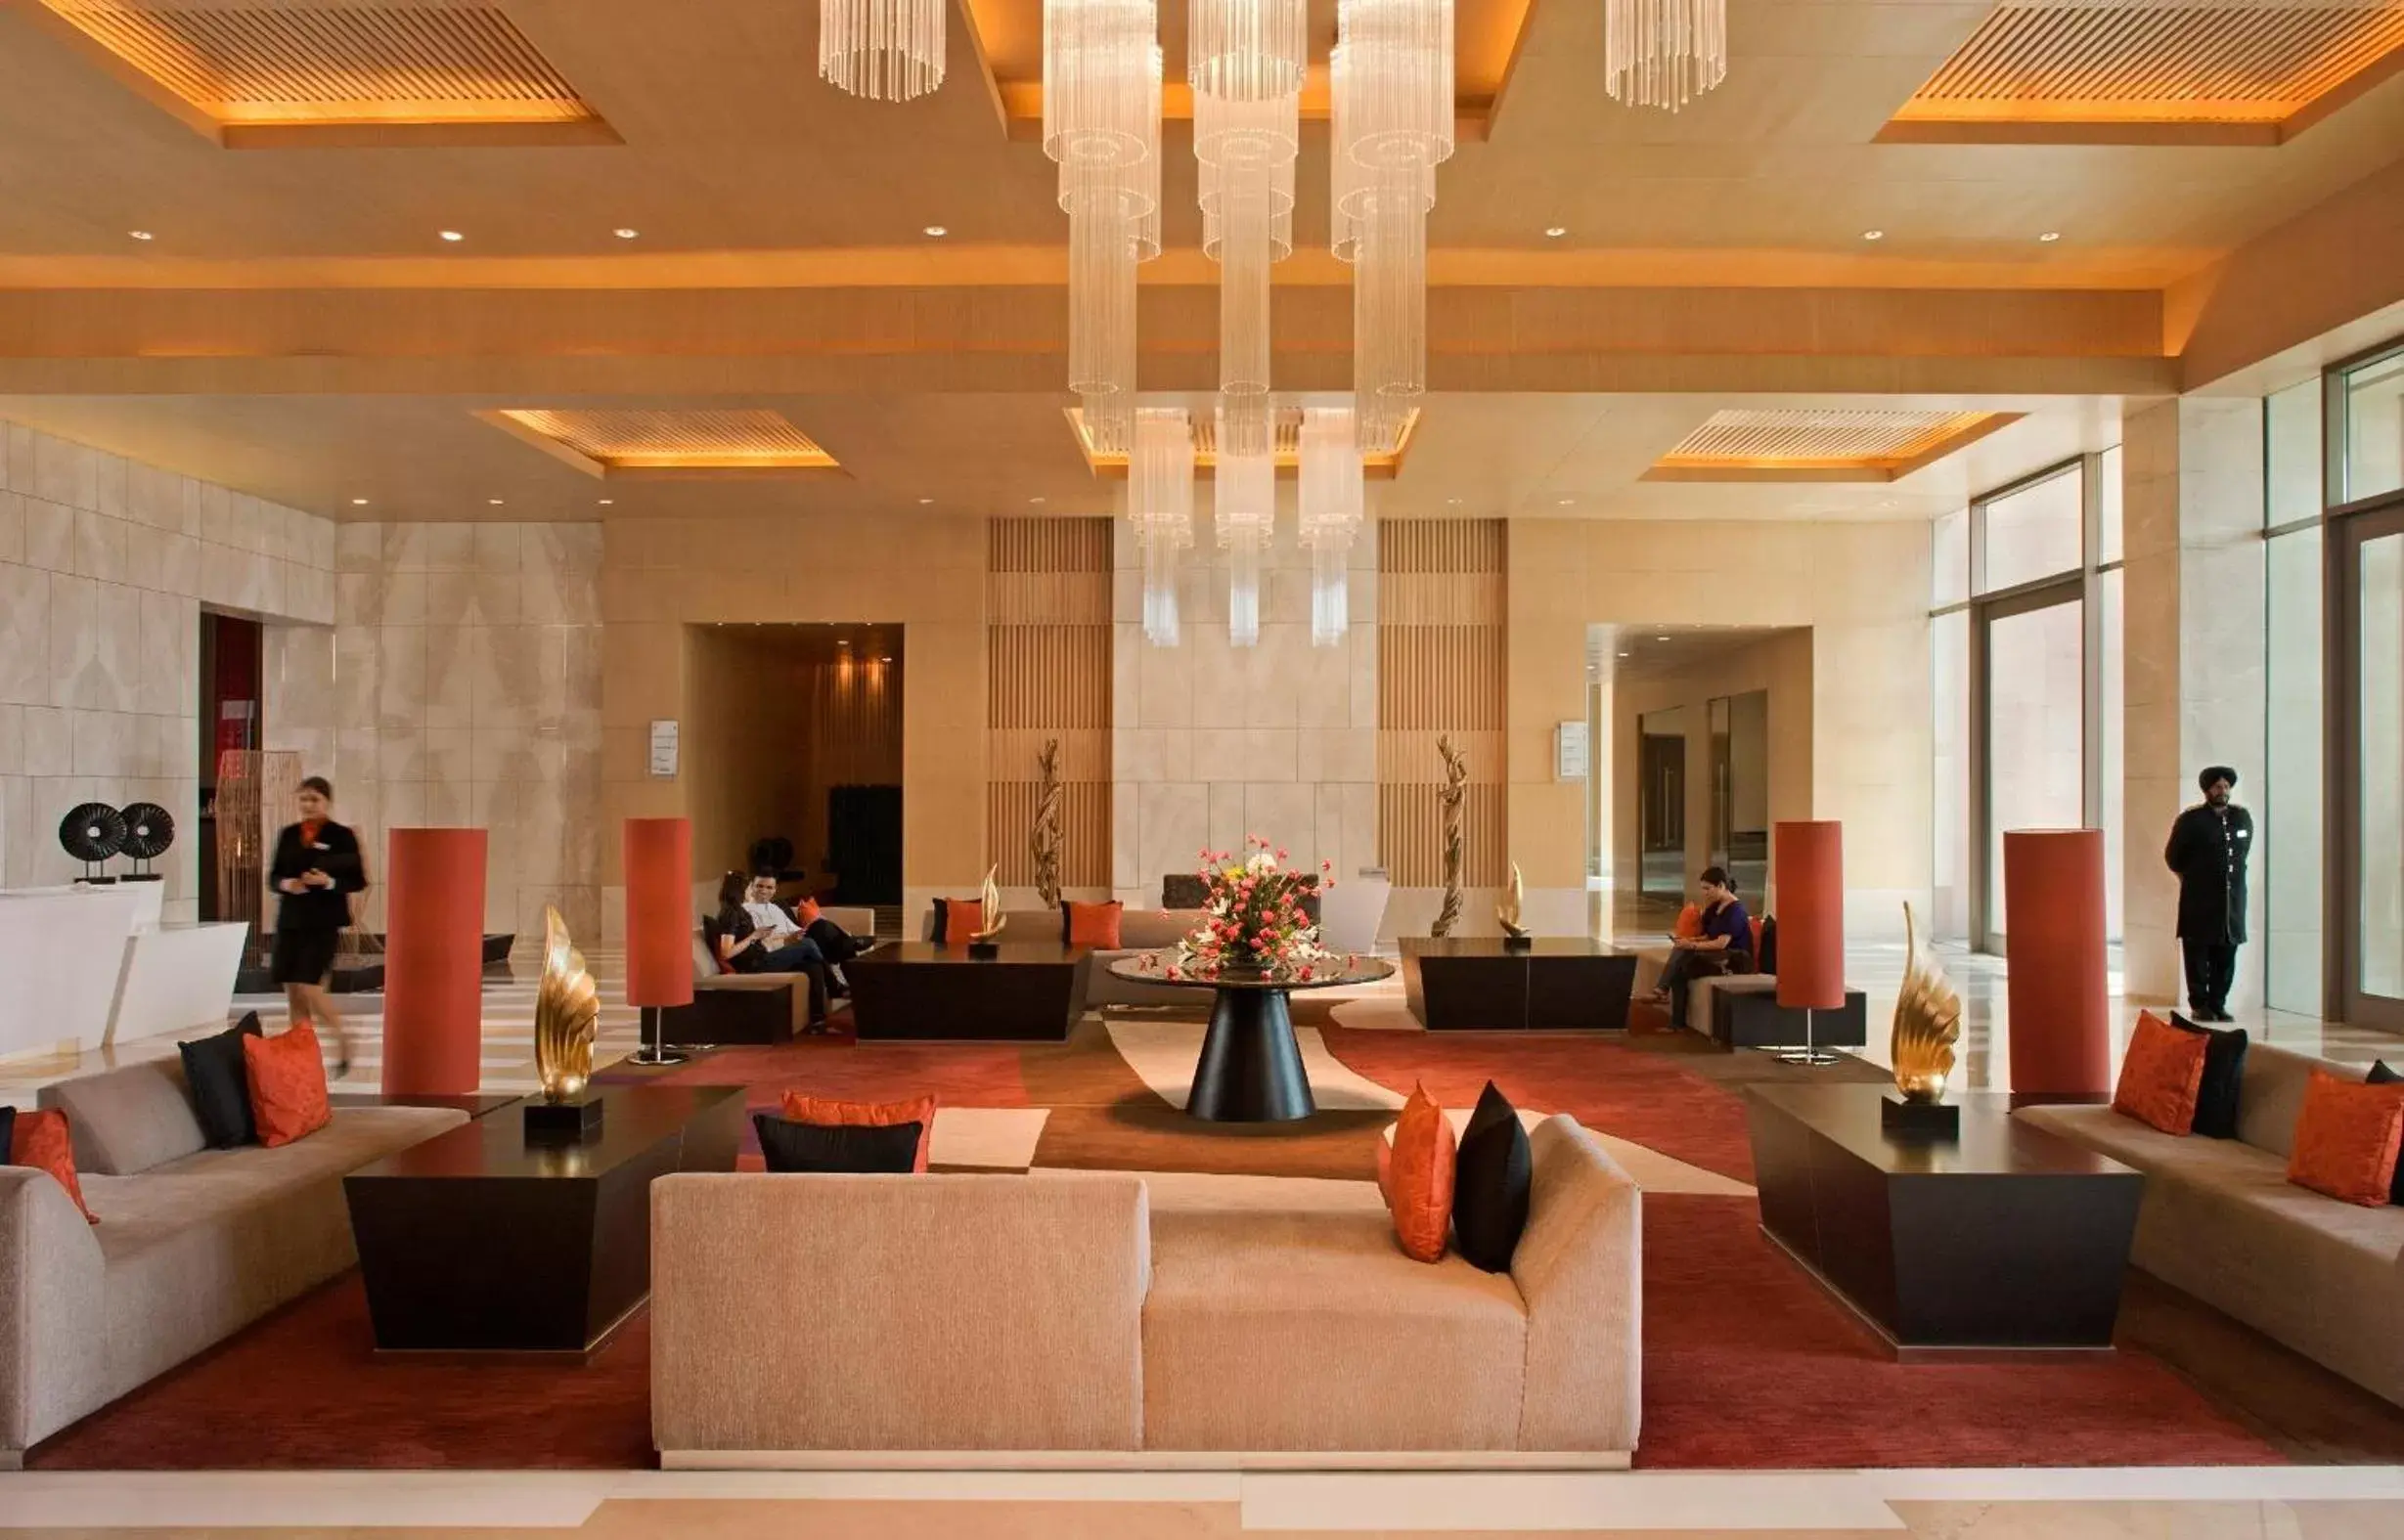 Lobby or reception, Lobby/Reception in Radisson Blu Hotel Amritsar